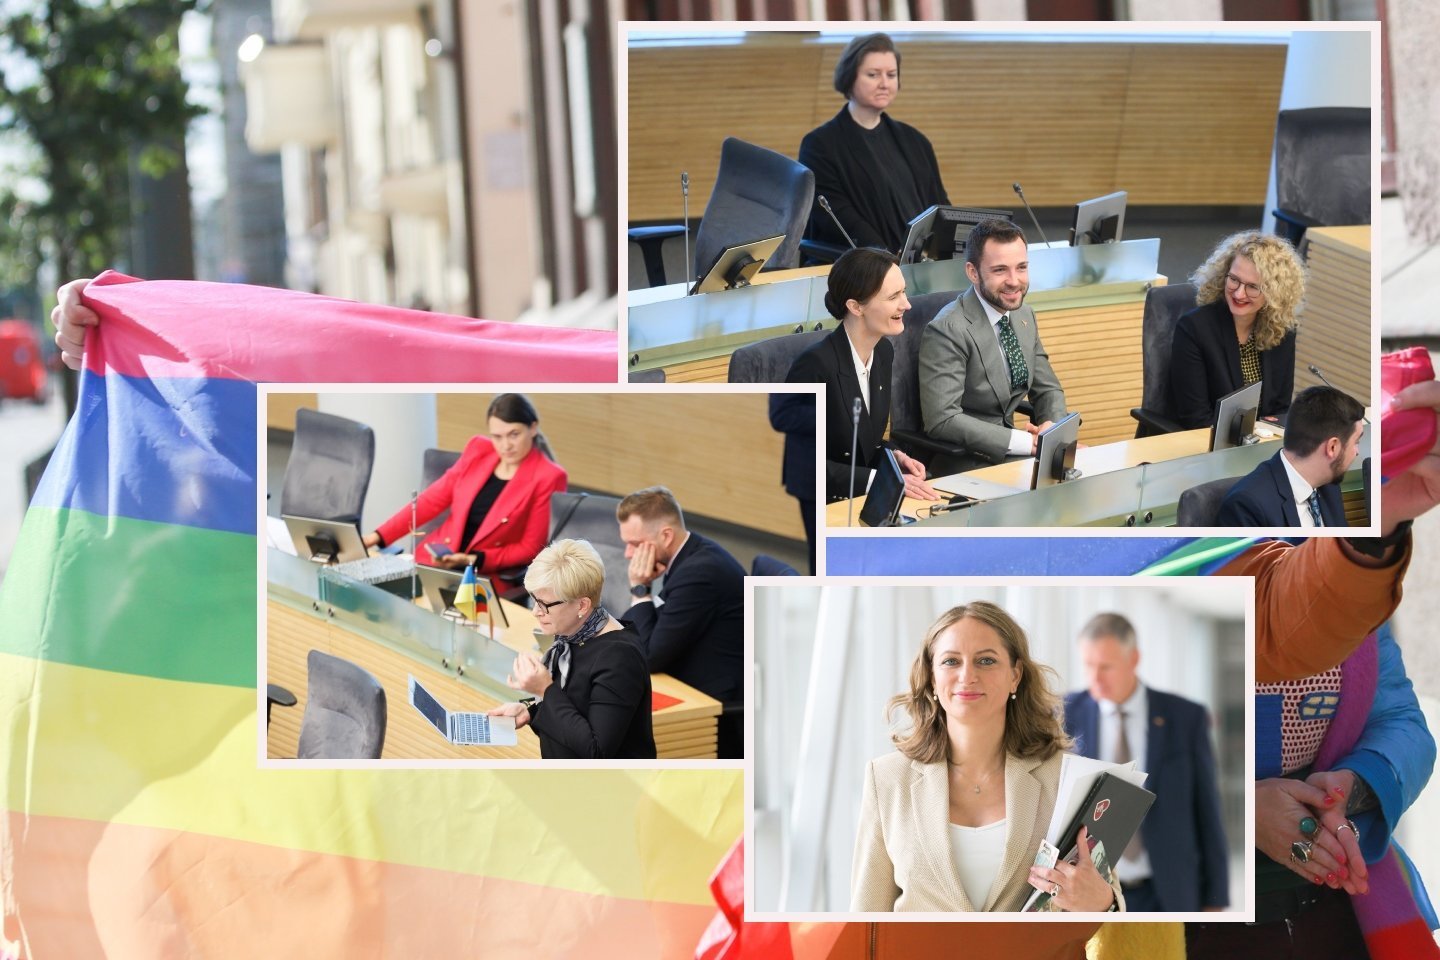 Civilinės sąjungos įstatymui Seime pasiekus paskutinį laiptelį, vis dar neaišku, koks likimas partnerystės instituto Lietuvoje laukia toliau.<br> Lrytas.lt koliažas